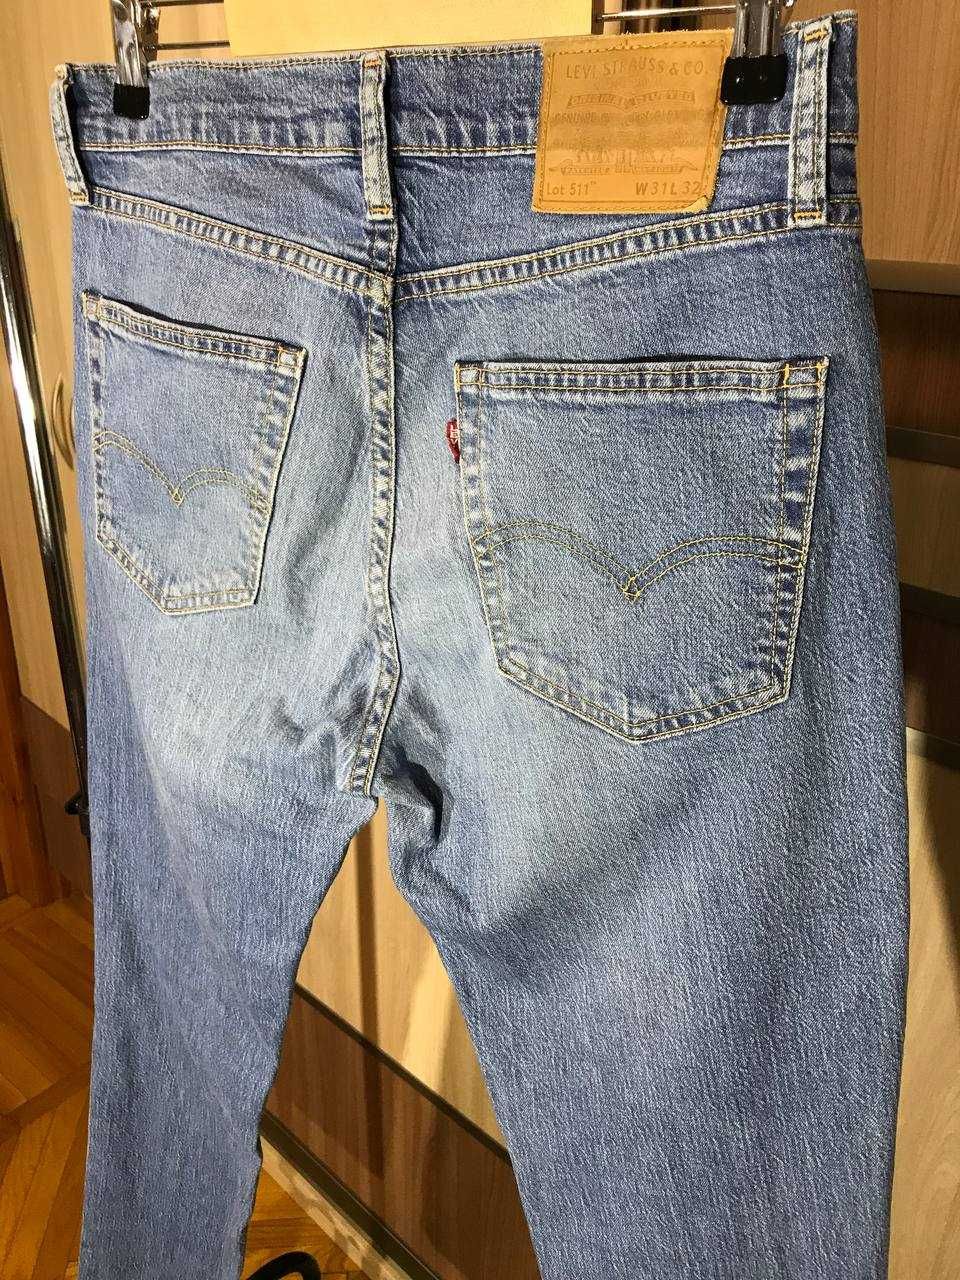 Мужские джинсы штаны Levi's 511 Premium Size 31/32 оригинал